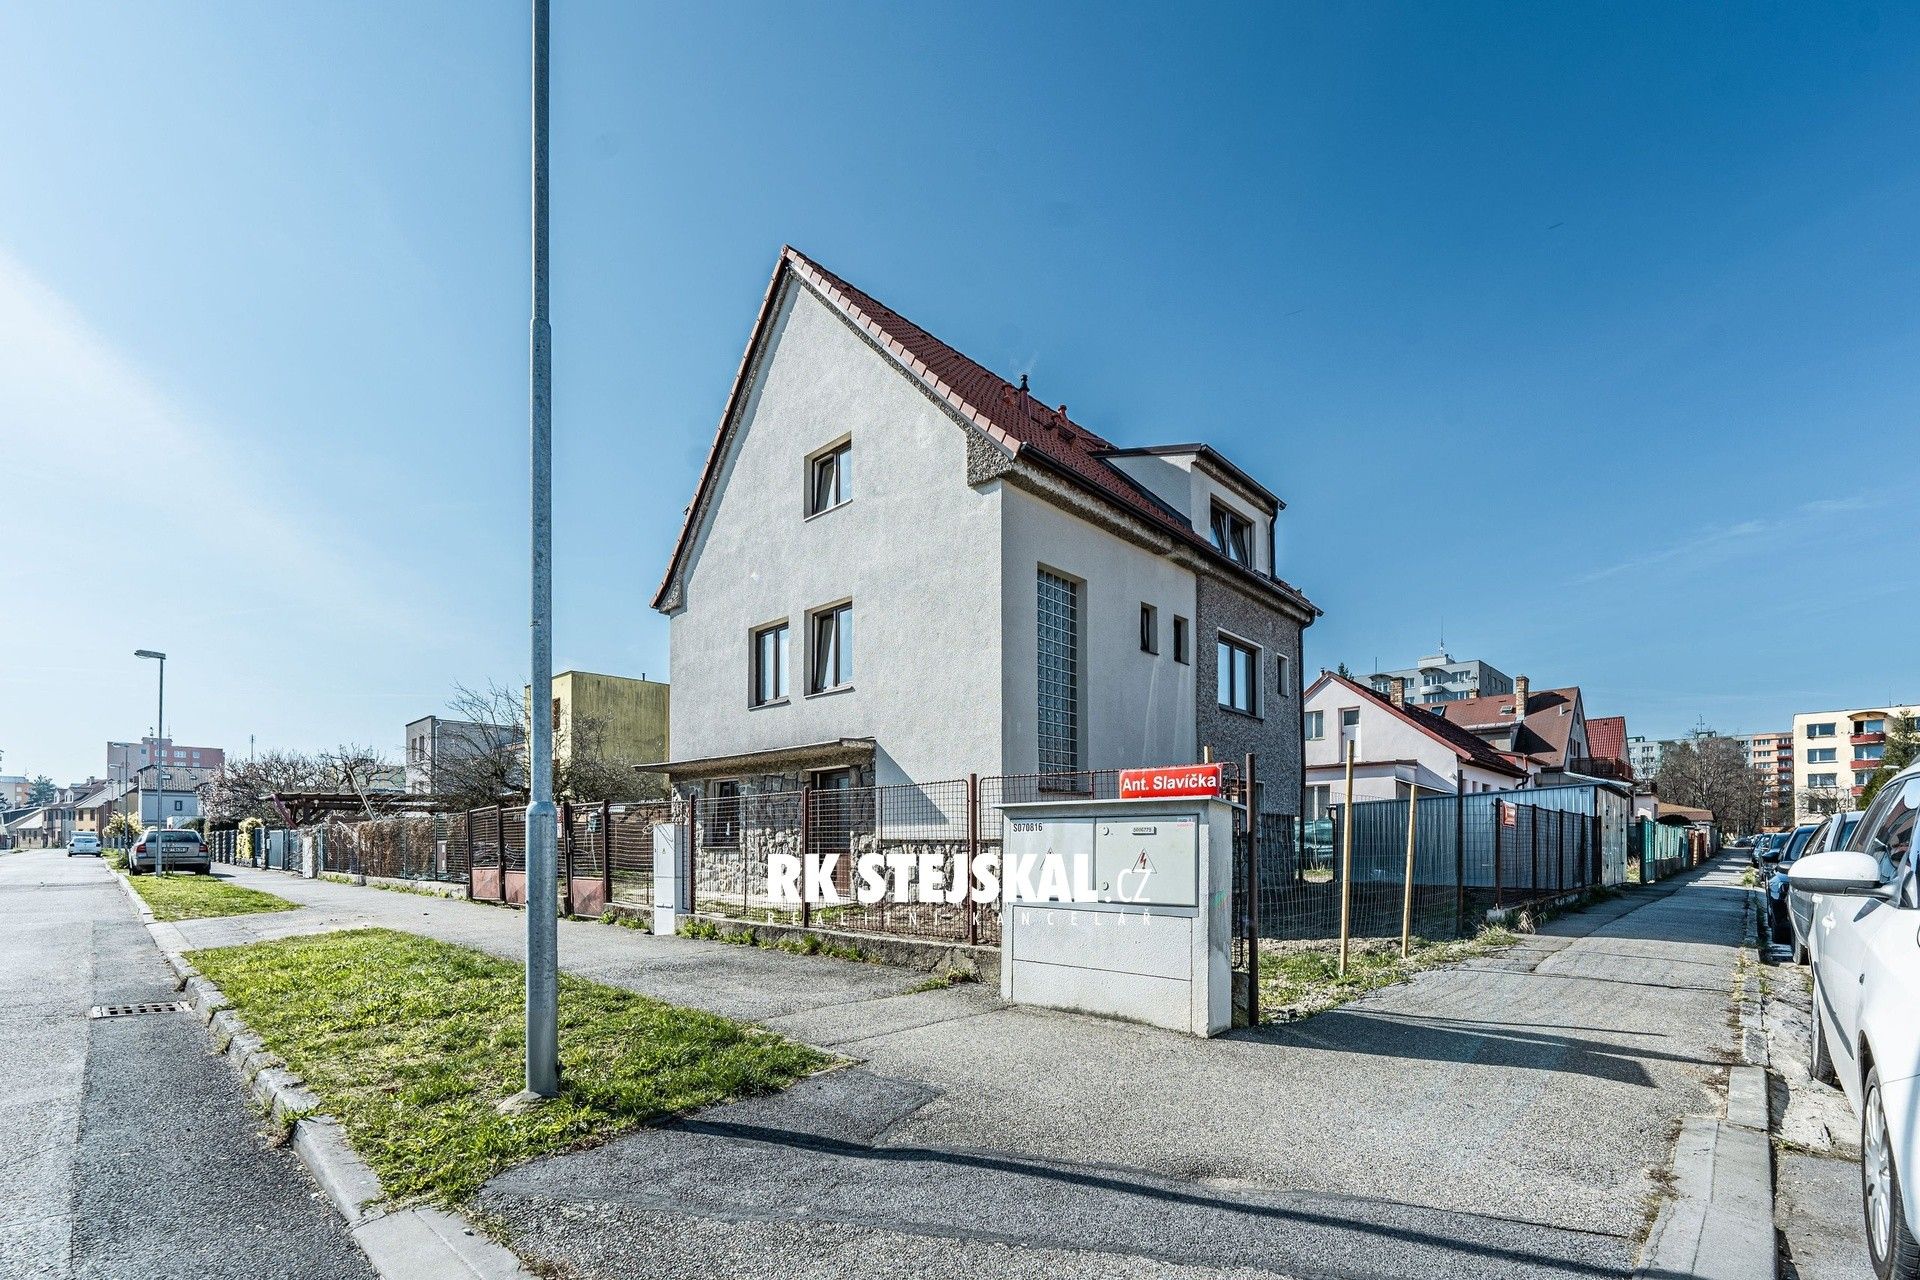 Ubytovací zařízení, Ant. Slavíčka, České Budějovice 2, Česko, 200 m²